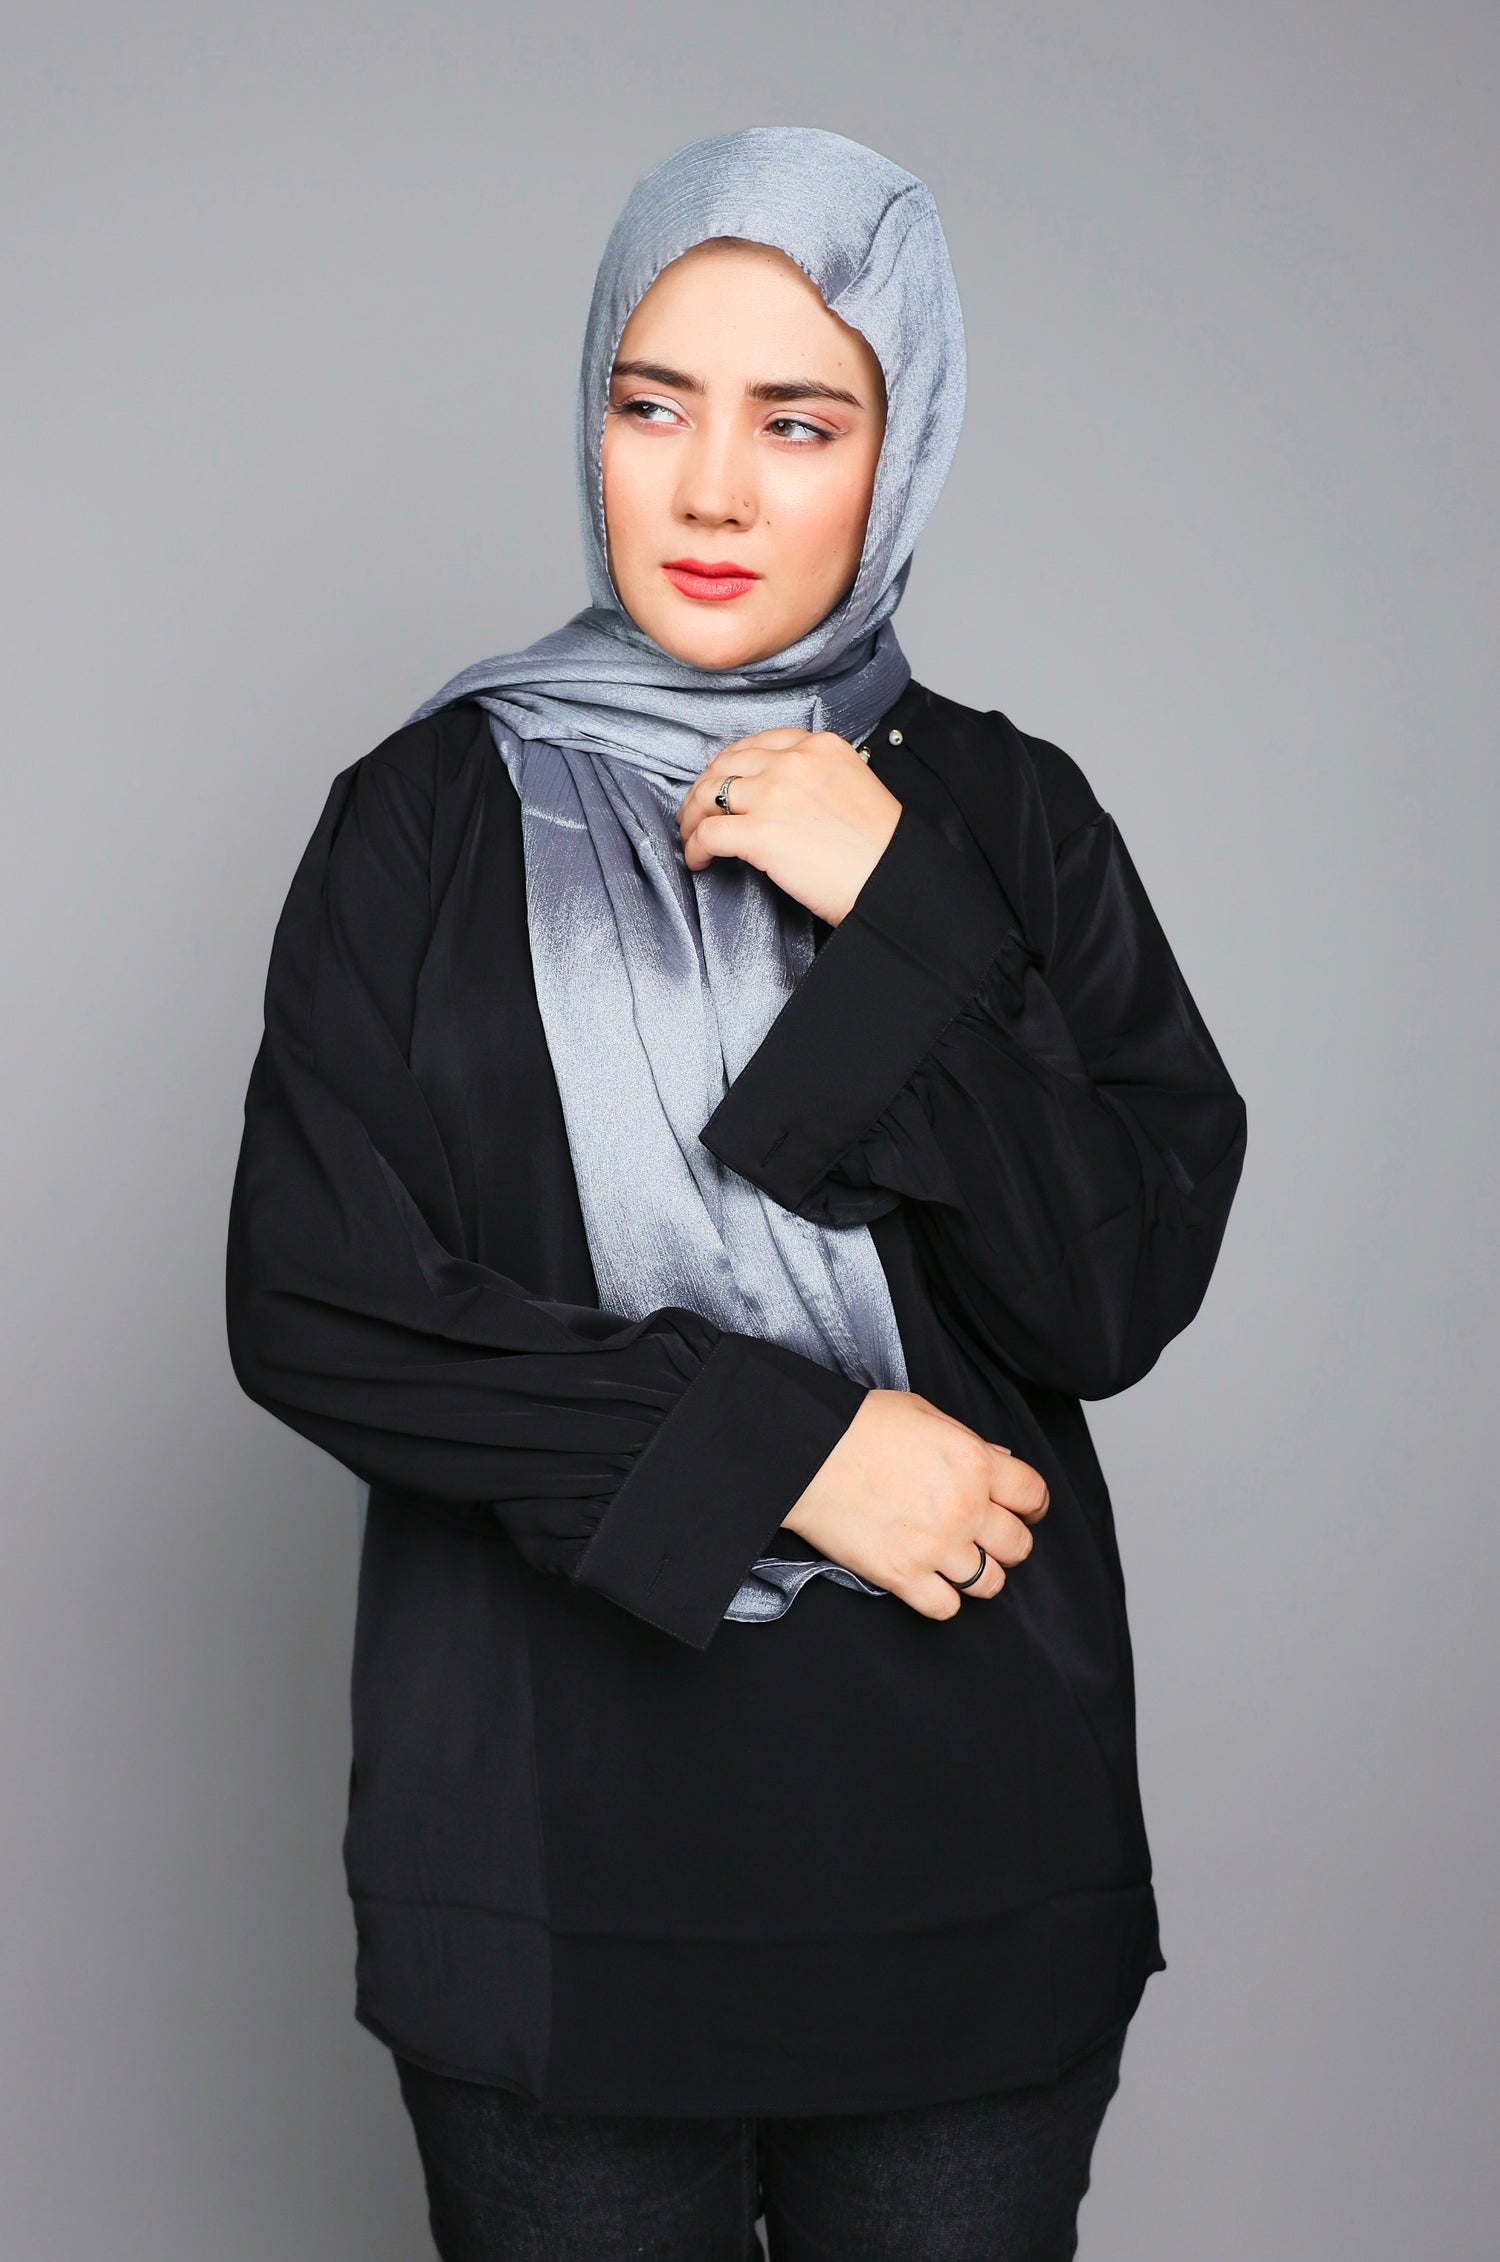 Metallic Chiffon Hijab in Silver